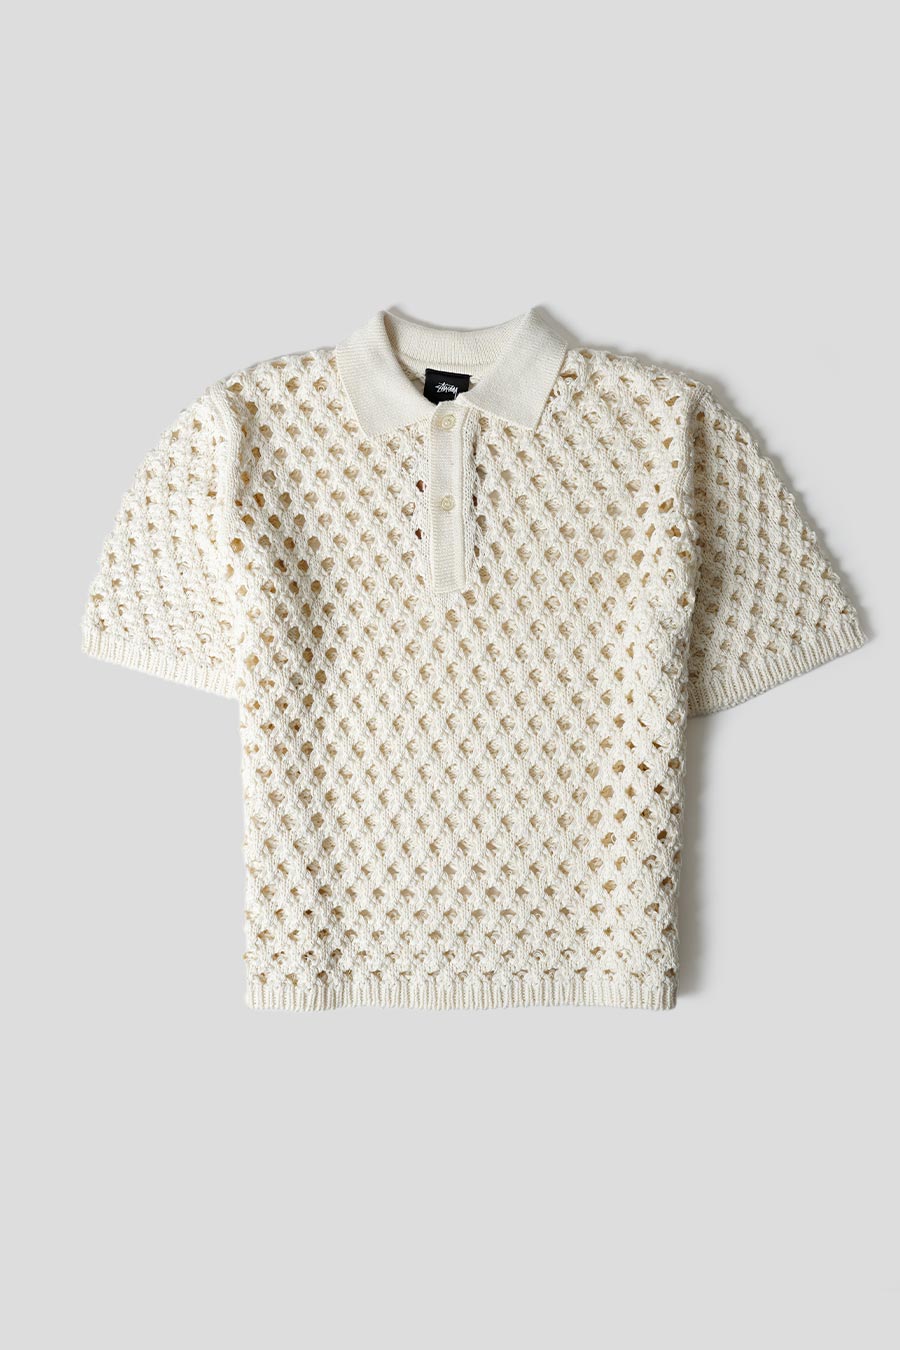 正規品! ポロシャツ stussy mesh polo white ポロシャツ - infisys.io